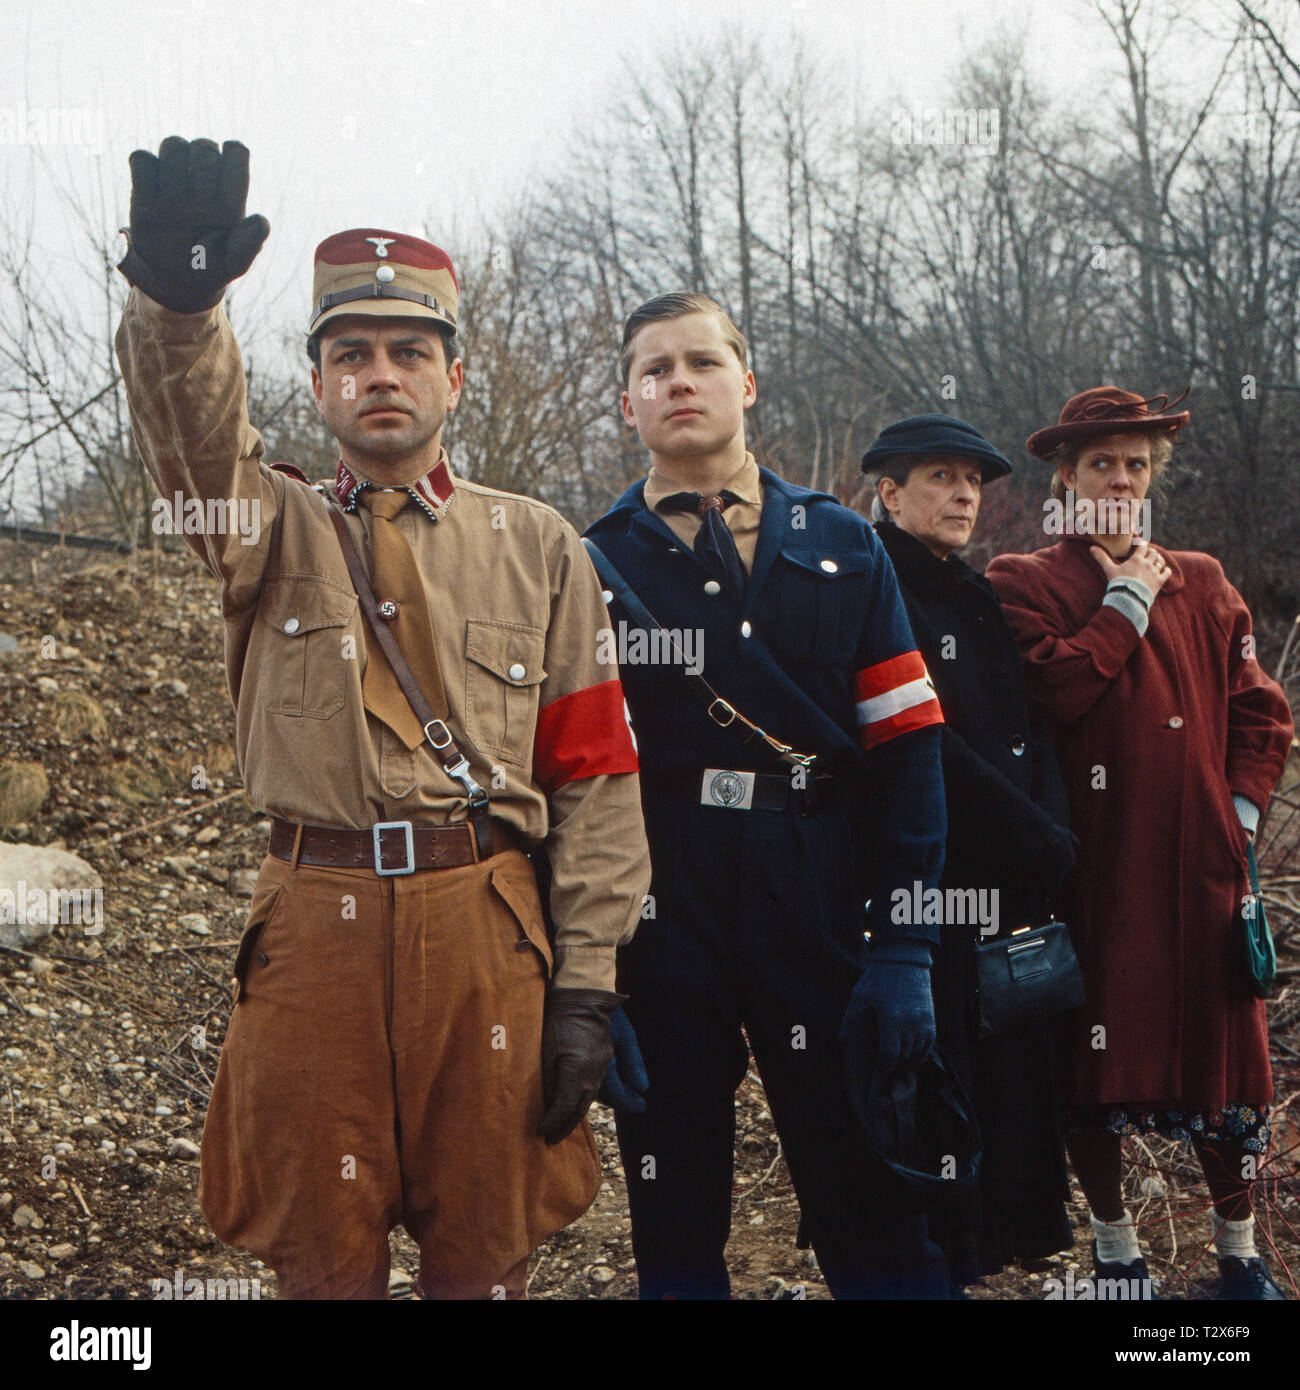 Rote Erde, Fernsehserie, Deutschland 1983 / 1990, Folge: "Kohle für den Endsieg', Darsteller: Hansa Czypionka, Mike Windgassen, Renata Becker, Margarita Broich Foto de stock